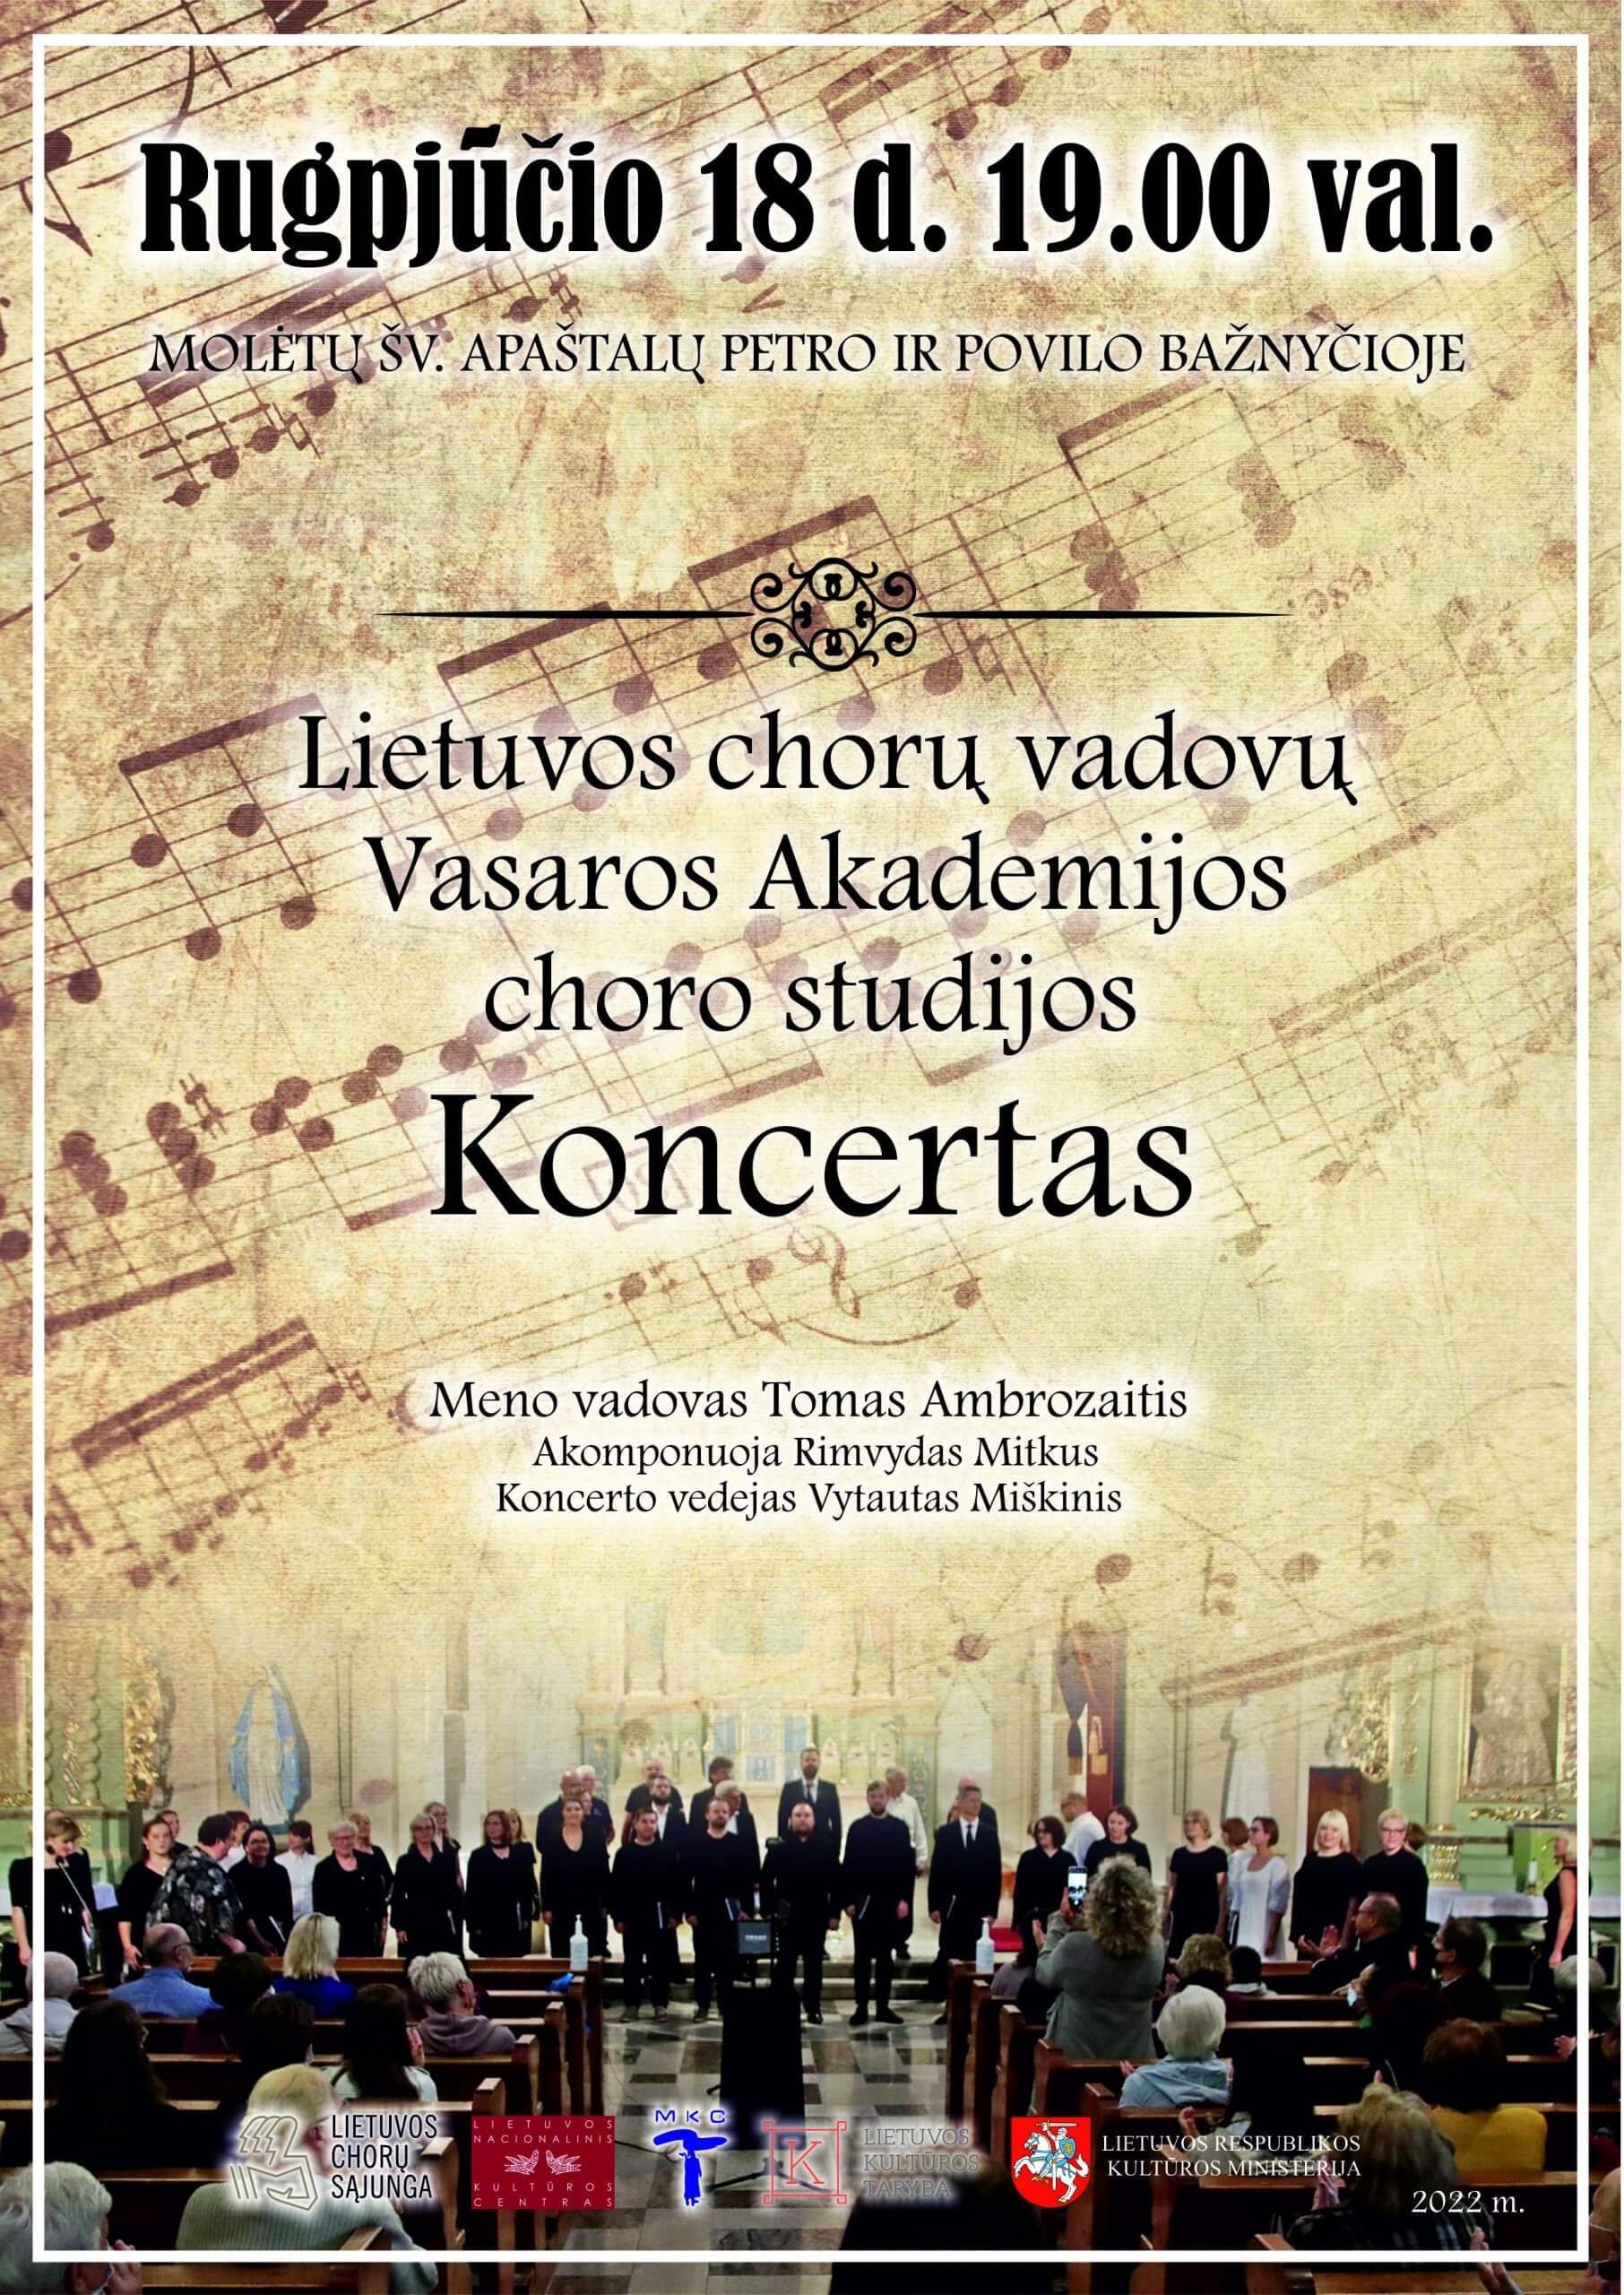 Kviečiame į Lietuvos chorų vadovų Vasaros akademijos choro studijos koncertą